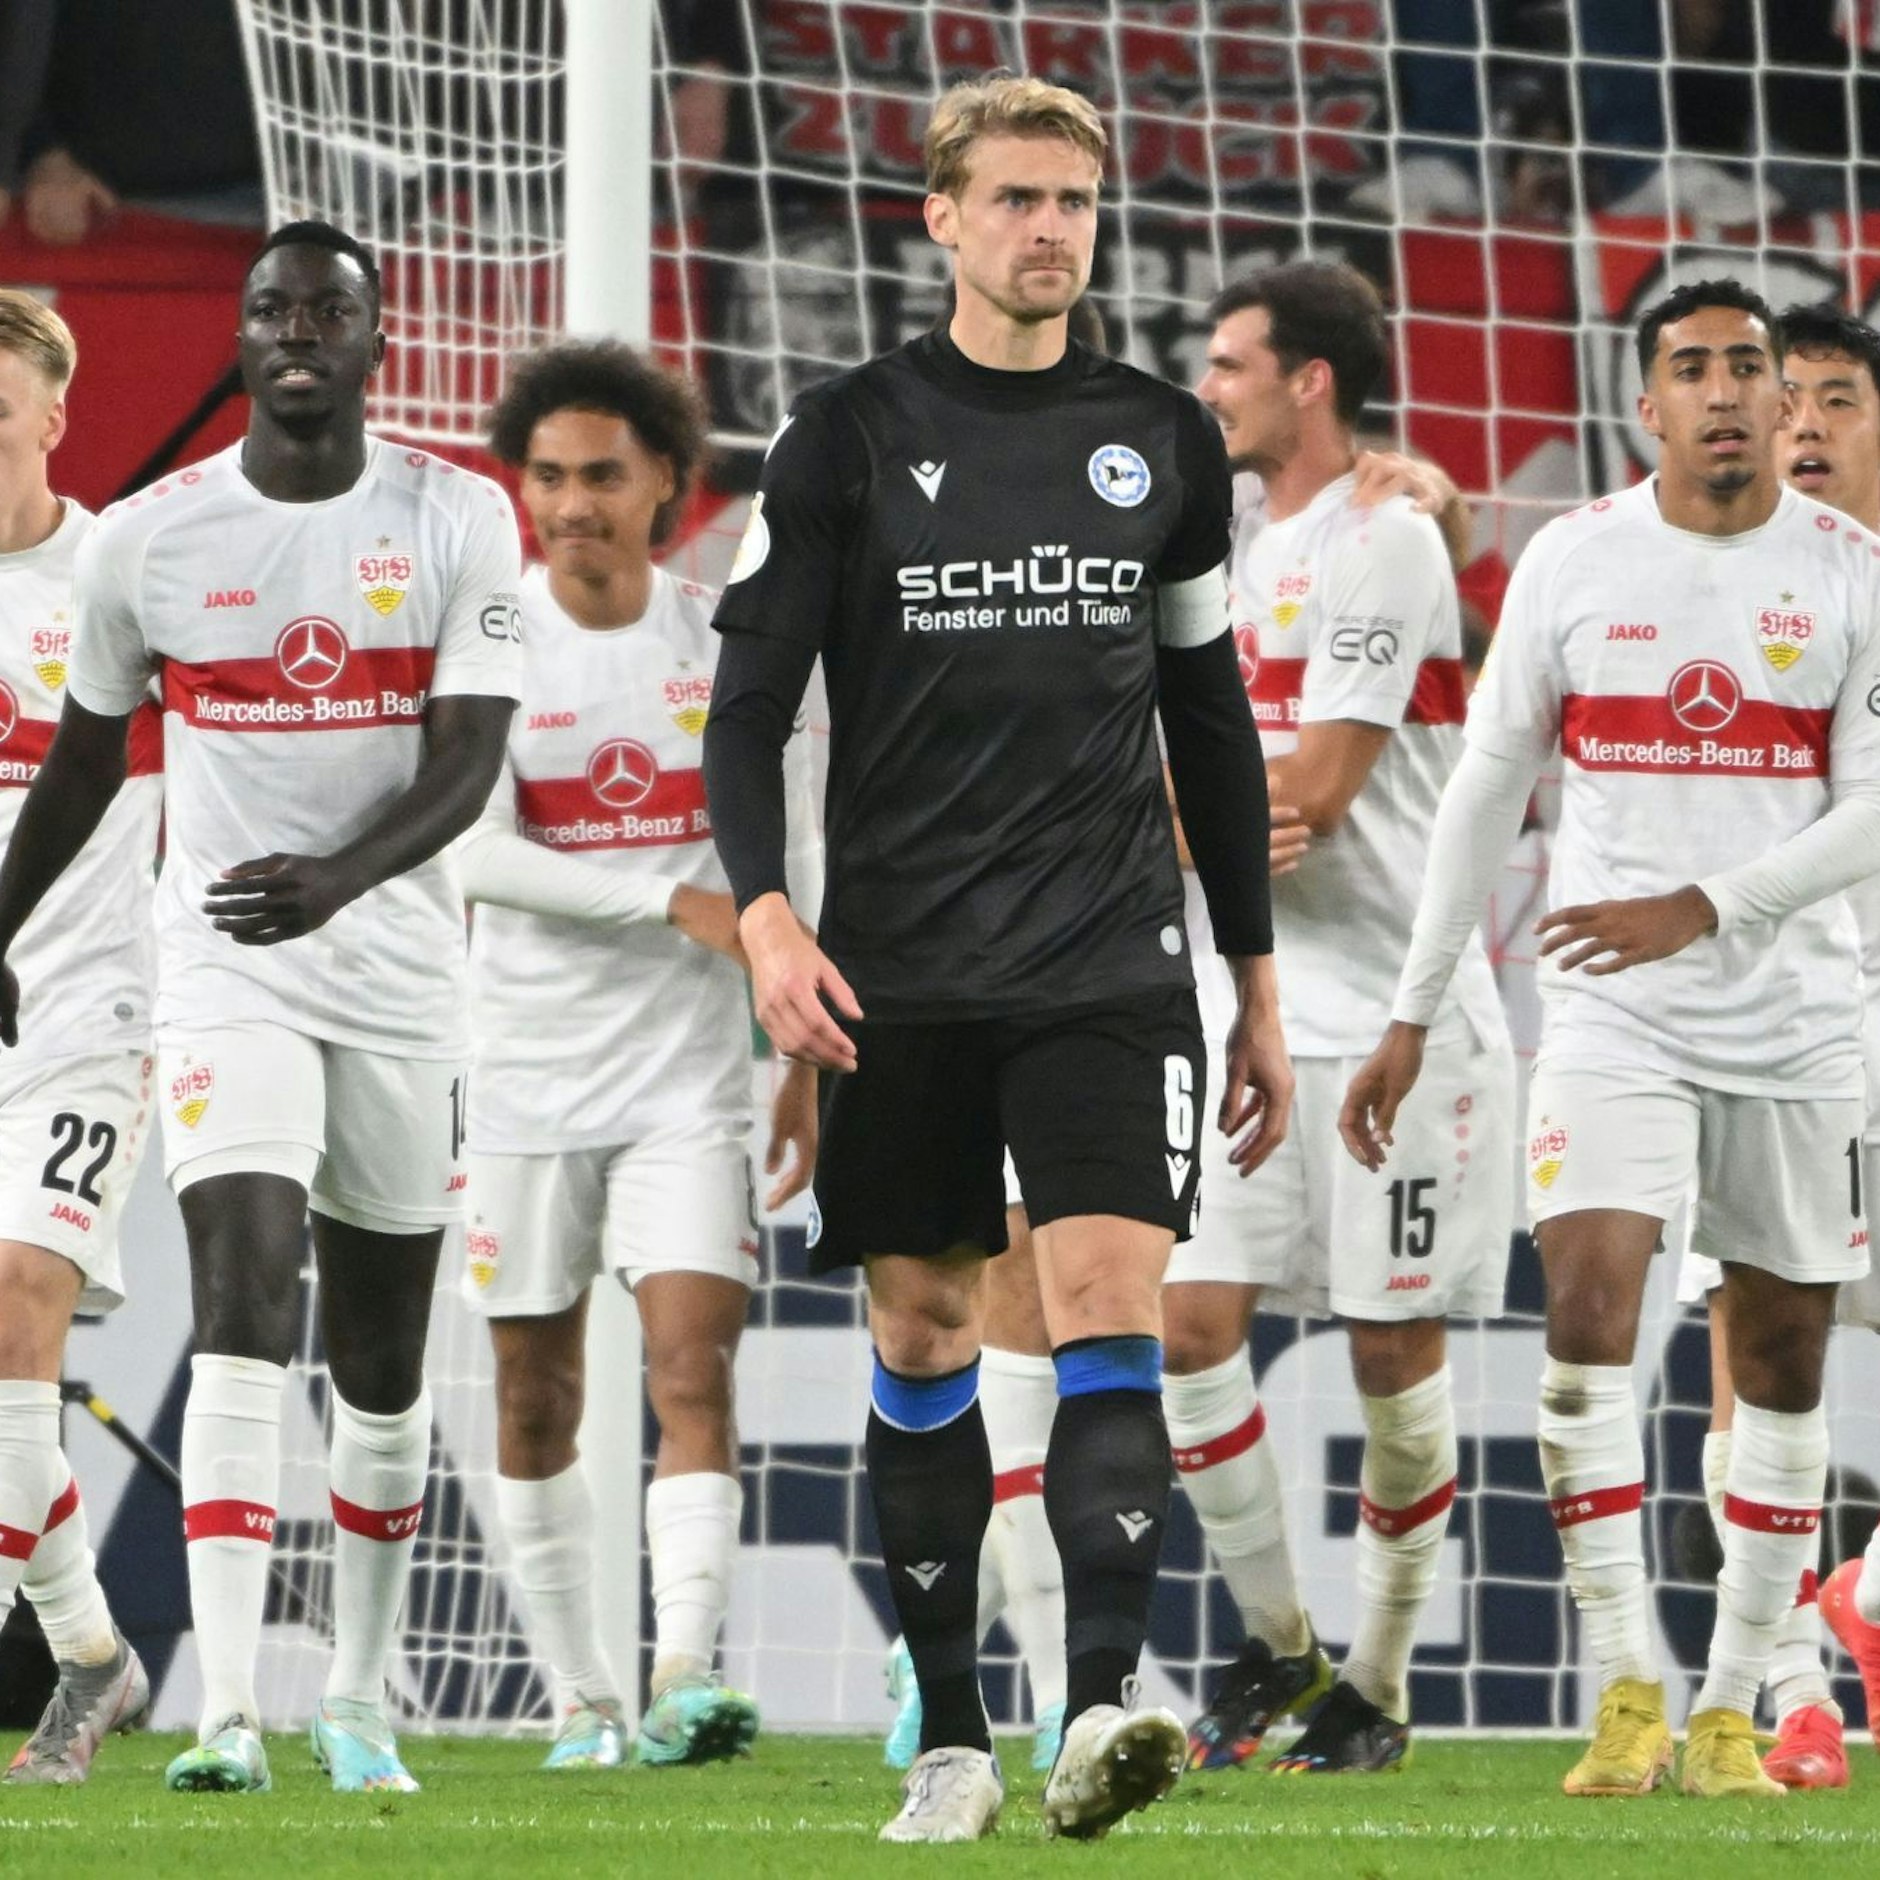 Image - Bielefeld nach 0:6 beim VfB im Krisenmodus